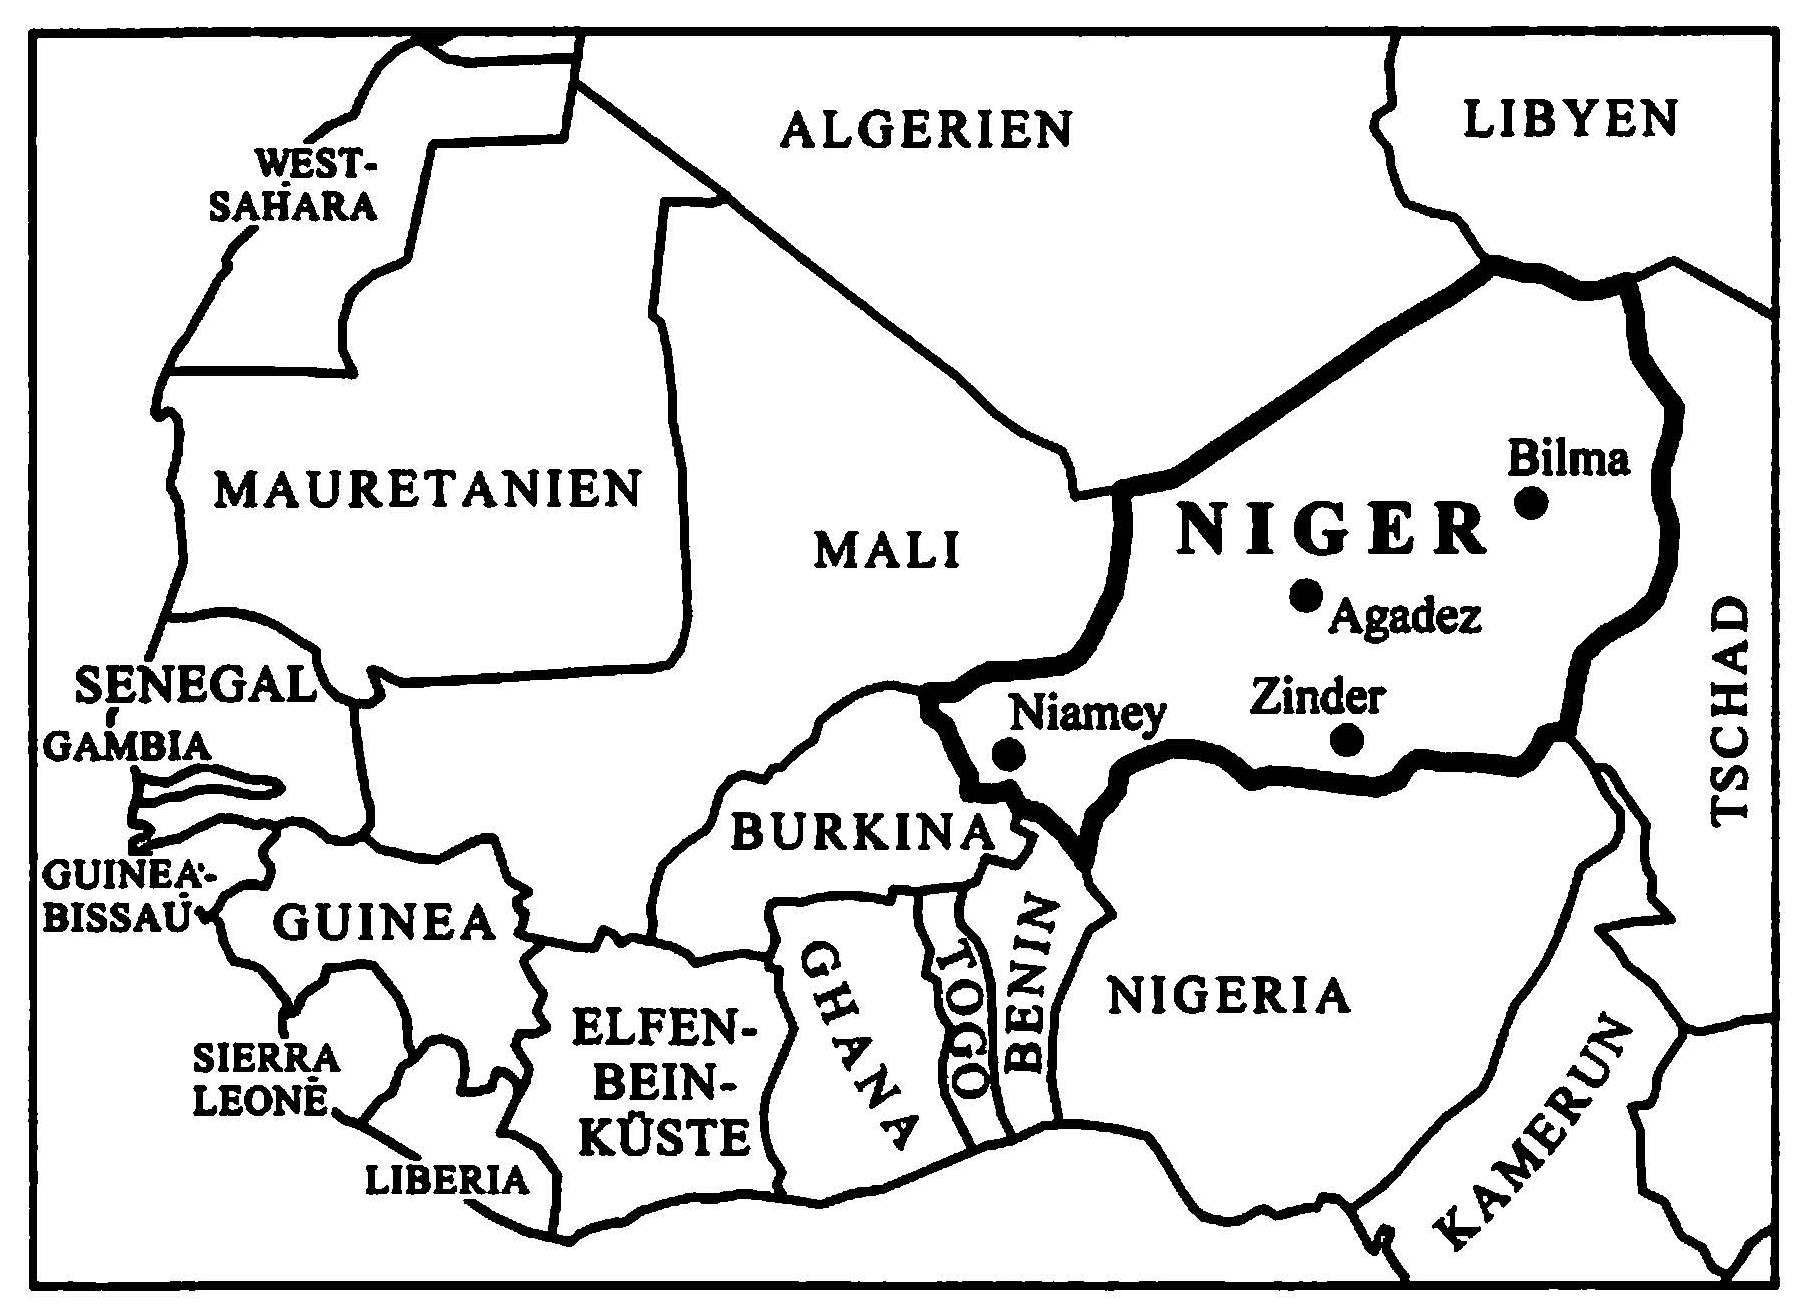 L’Histoire du Niger, transcrit du touareg de l’Ayr